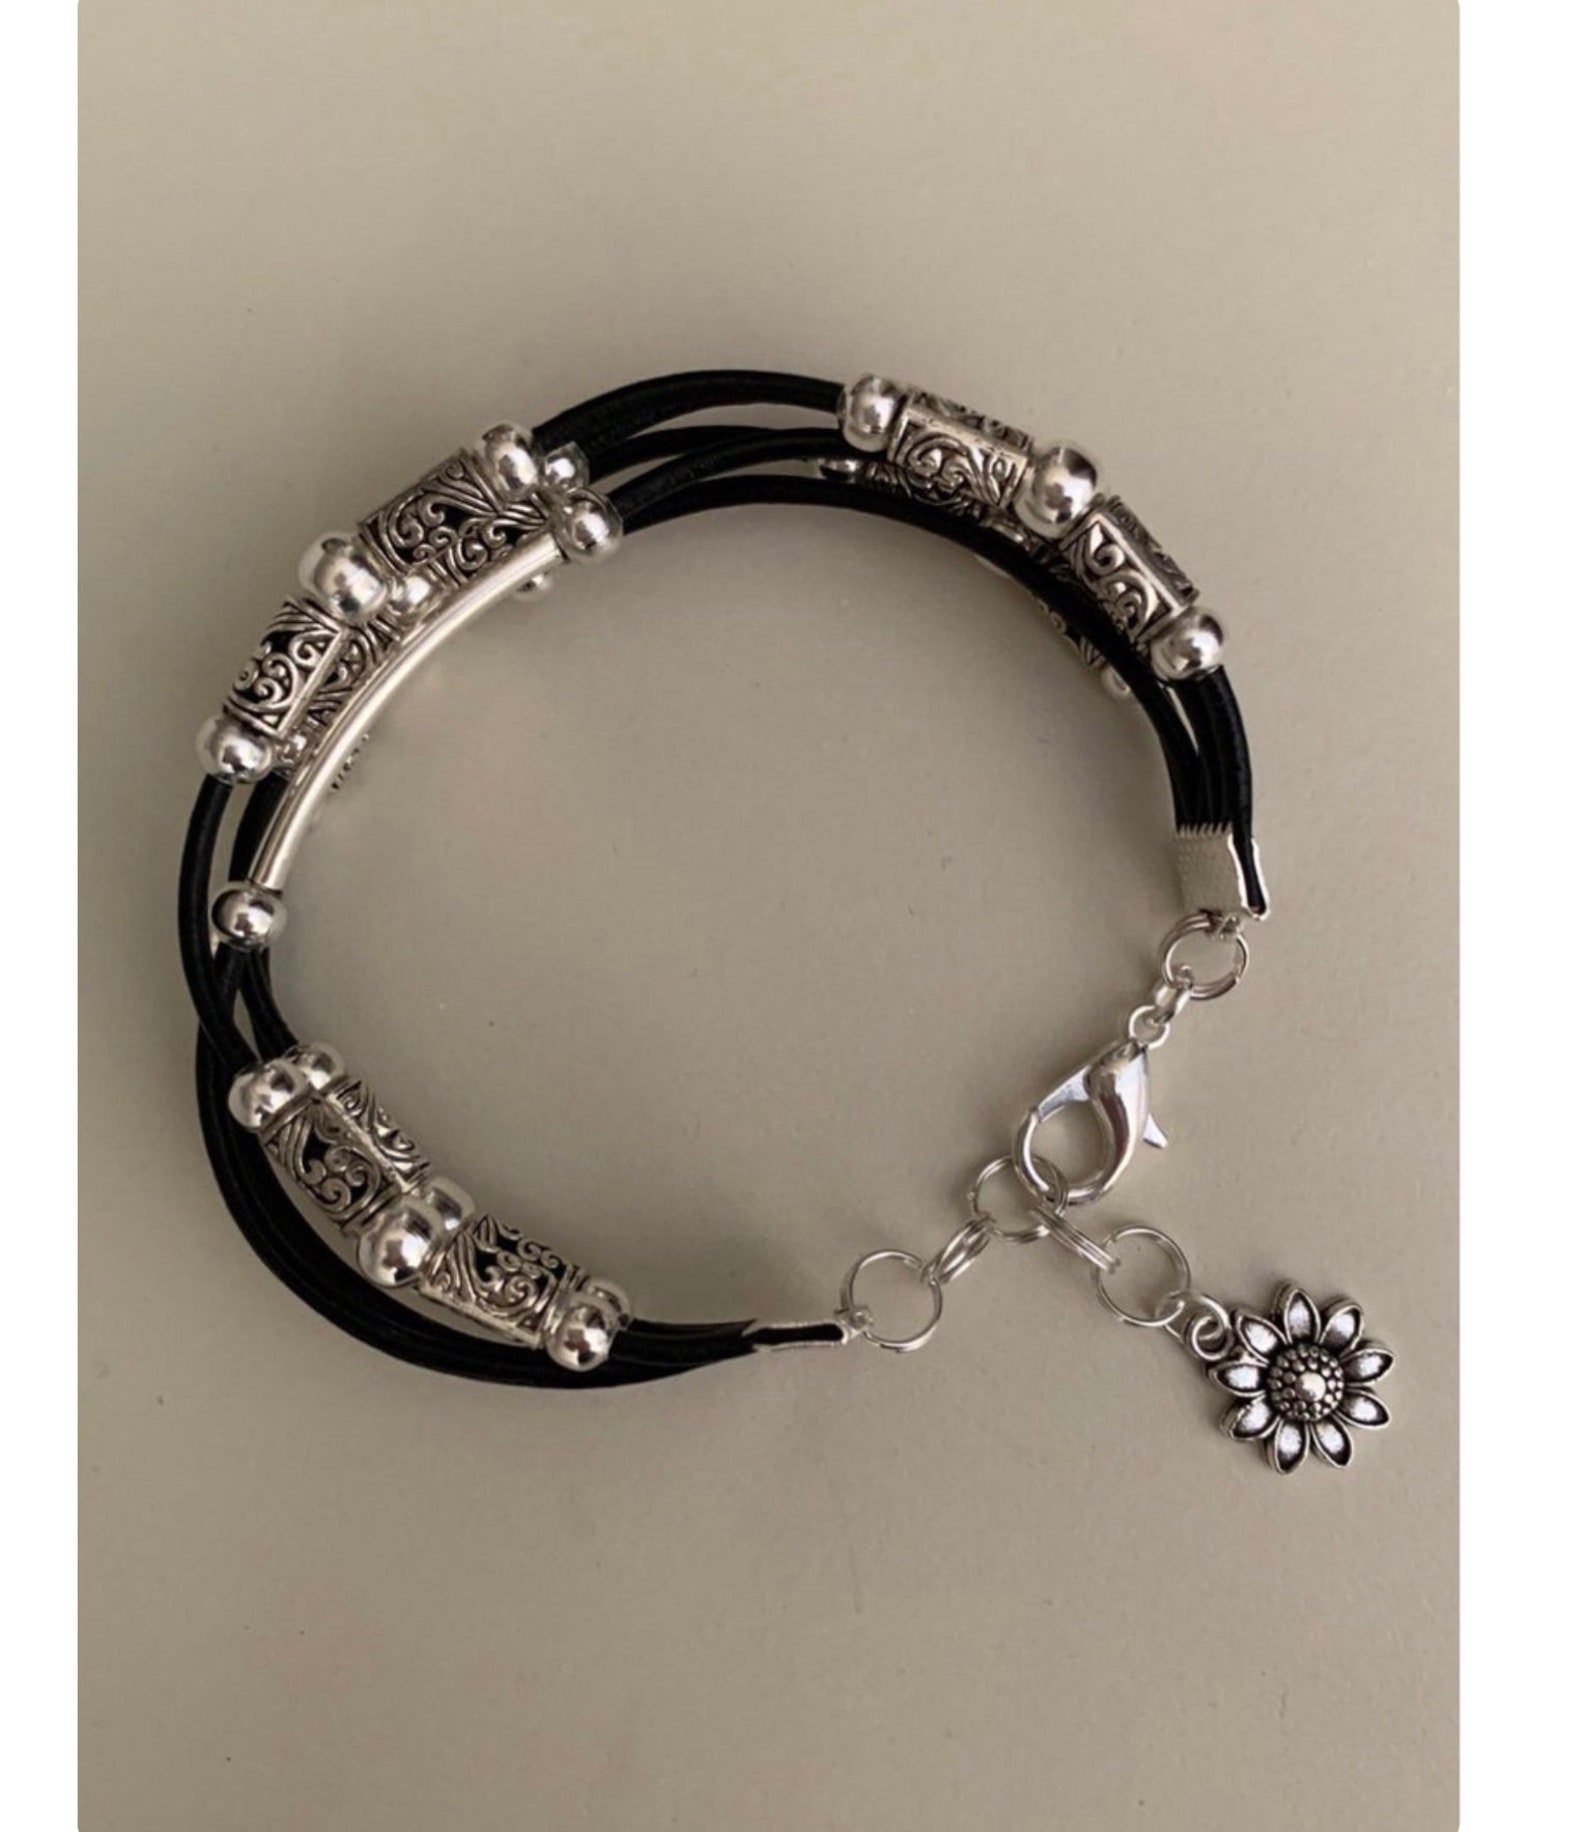 Bracelet for Women Boho Bracelet/women's Leather | Etsy